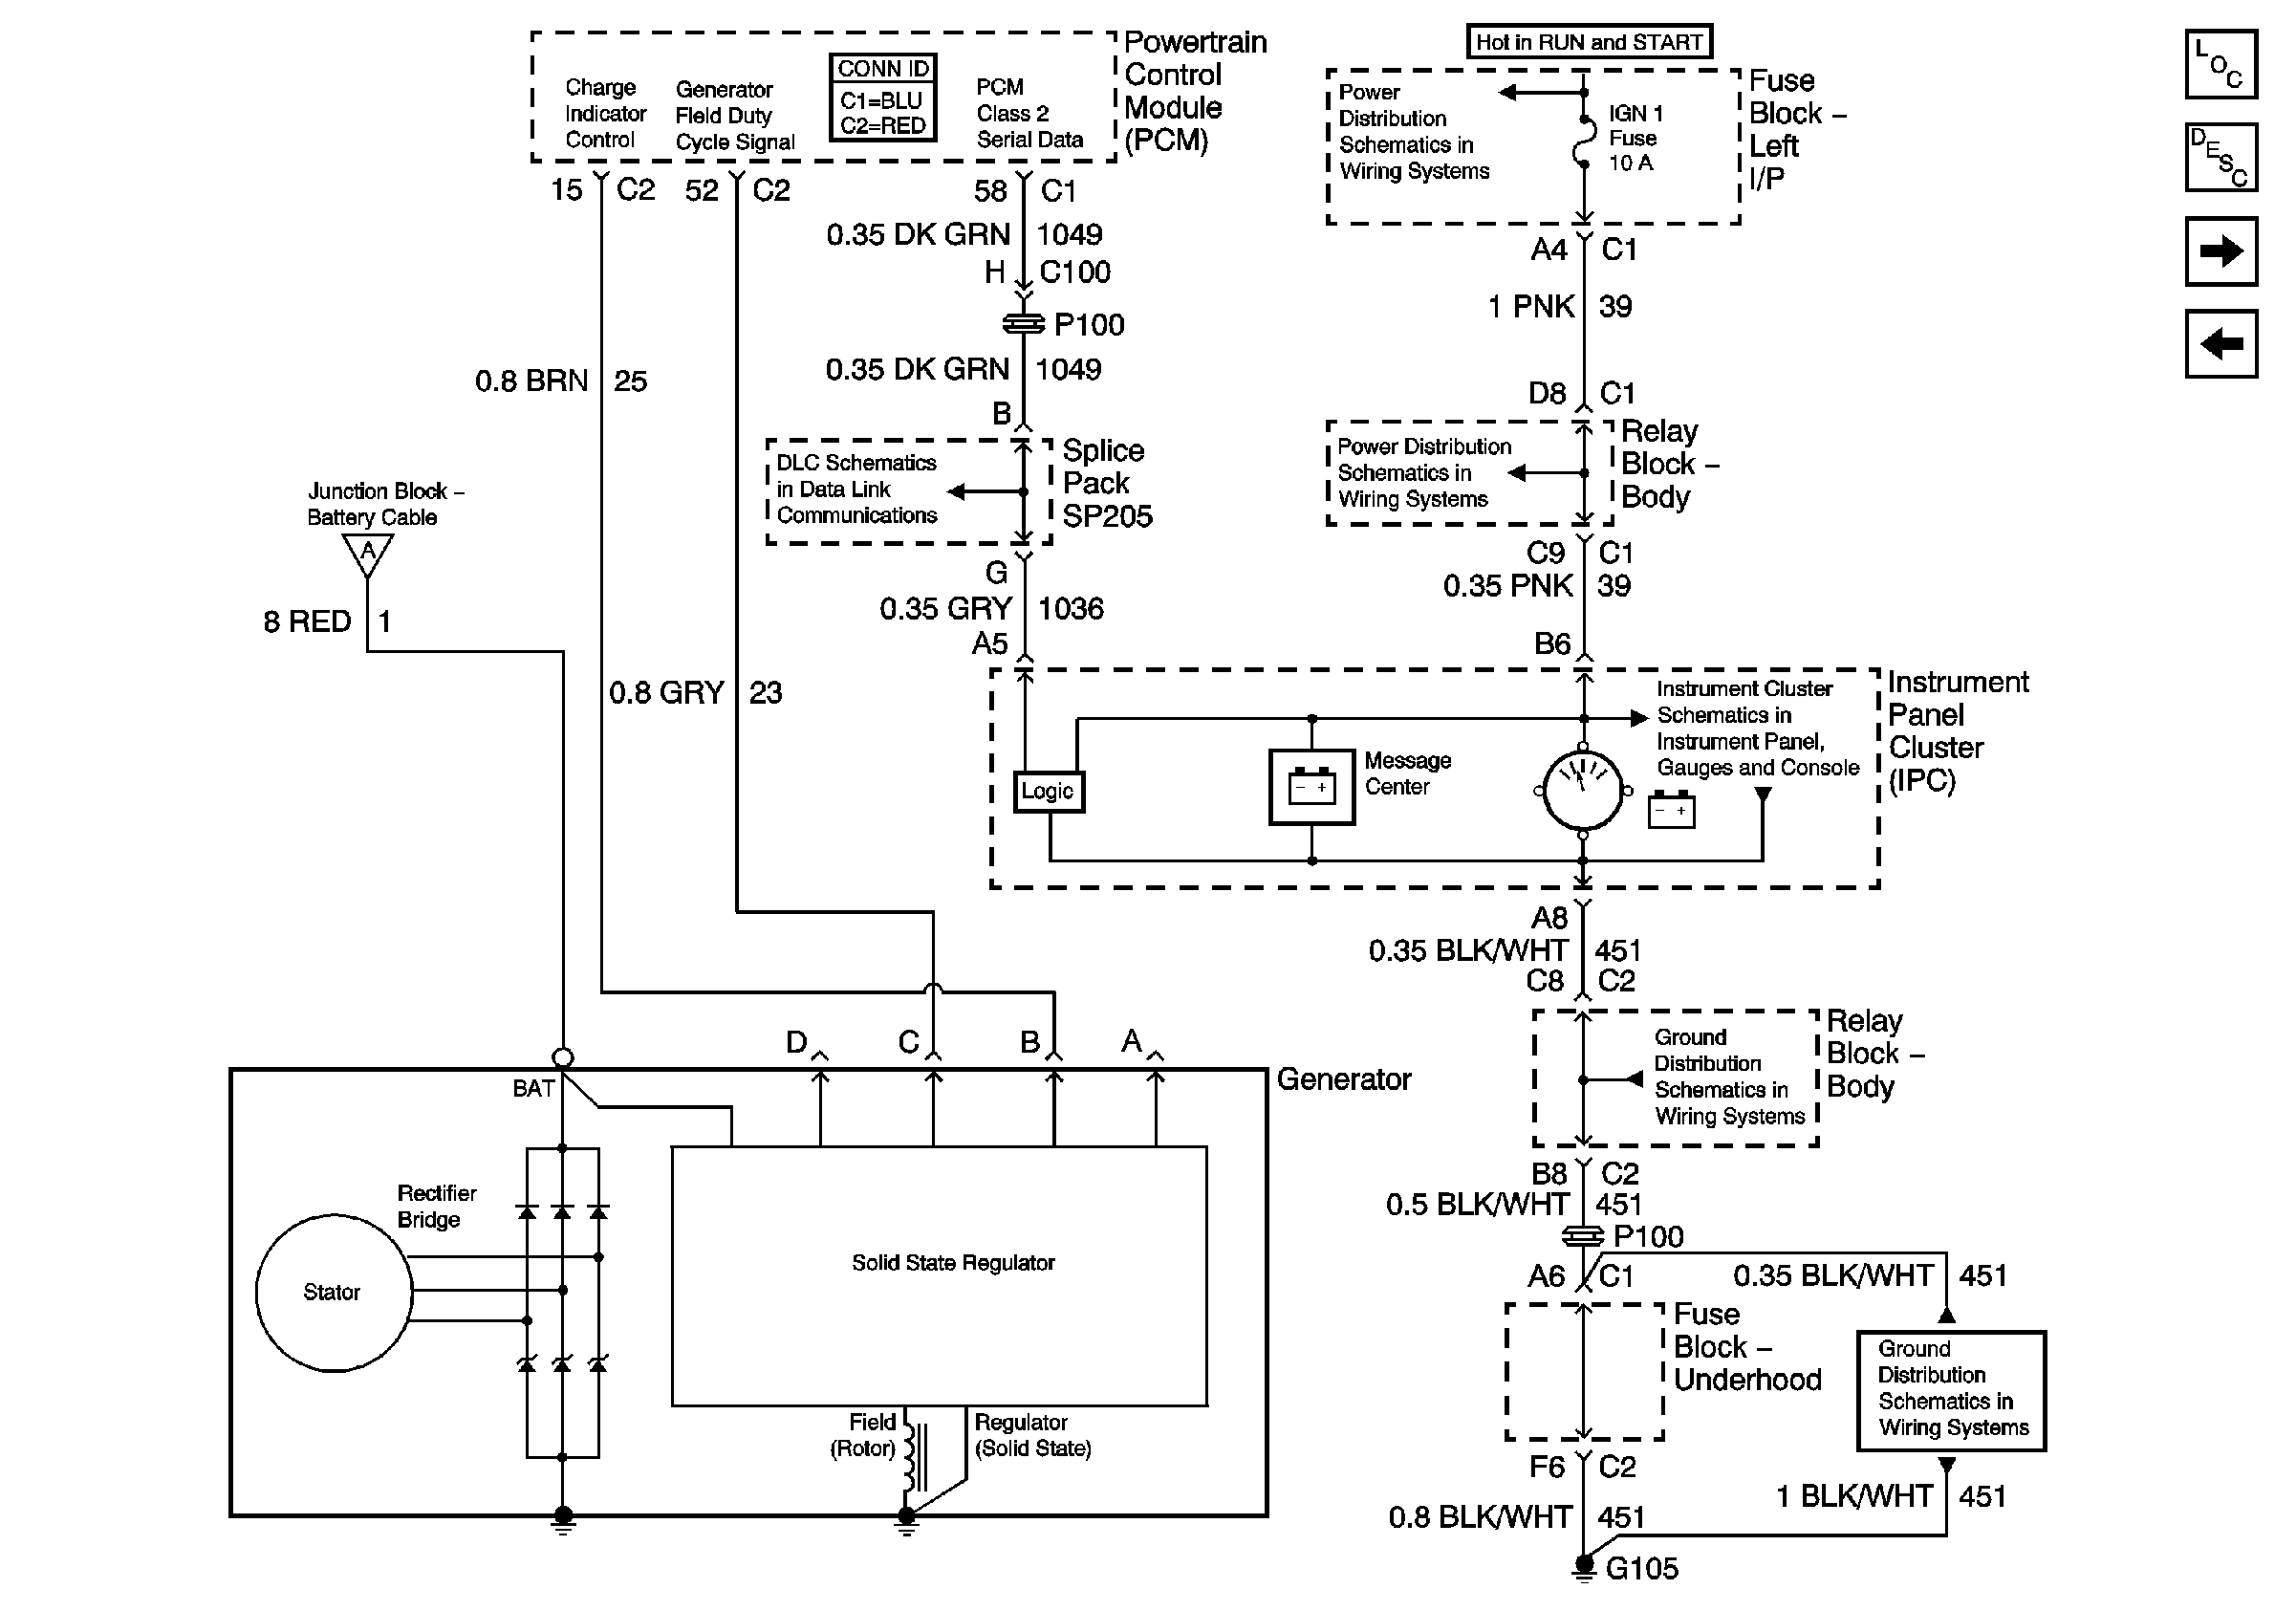 2002 alternator wiring schematic - PerformanceTrucks.net Forums